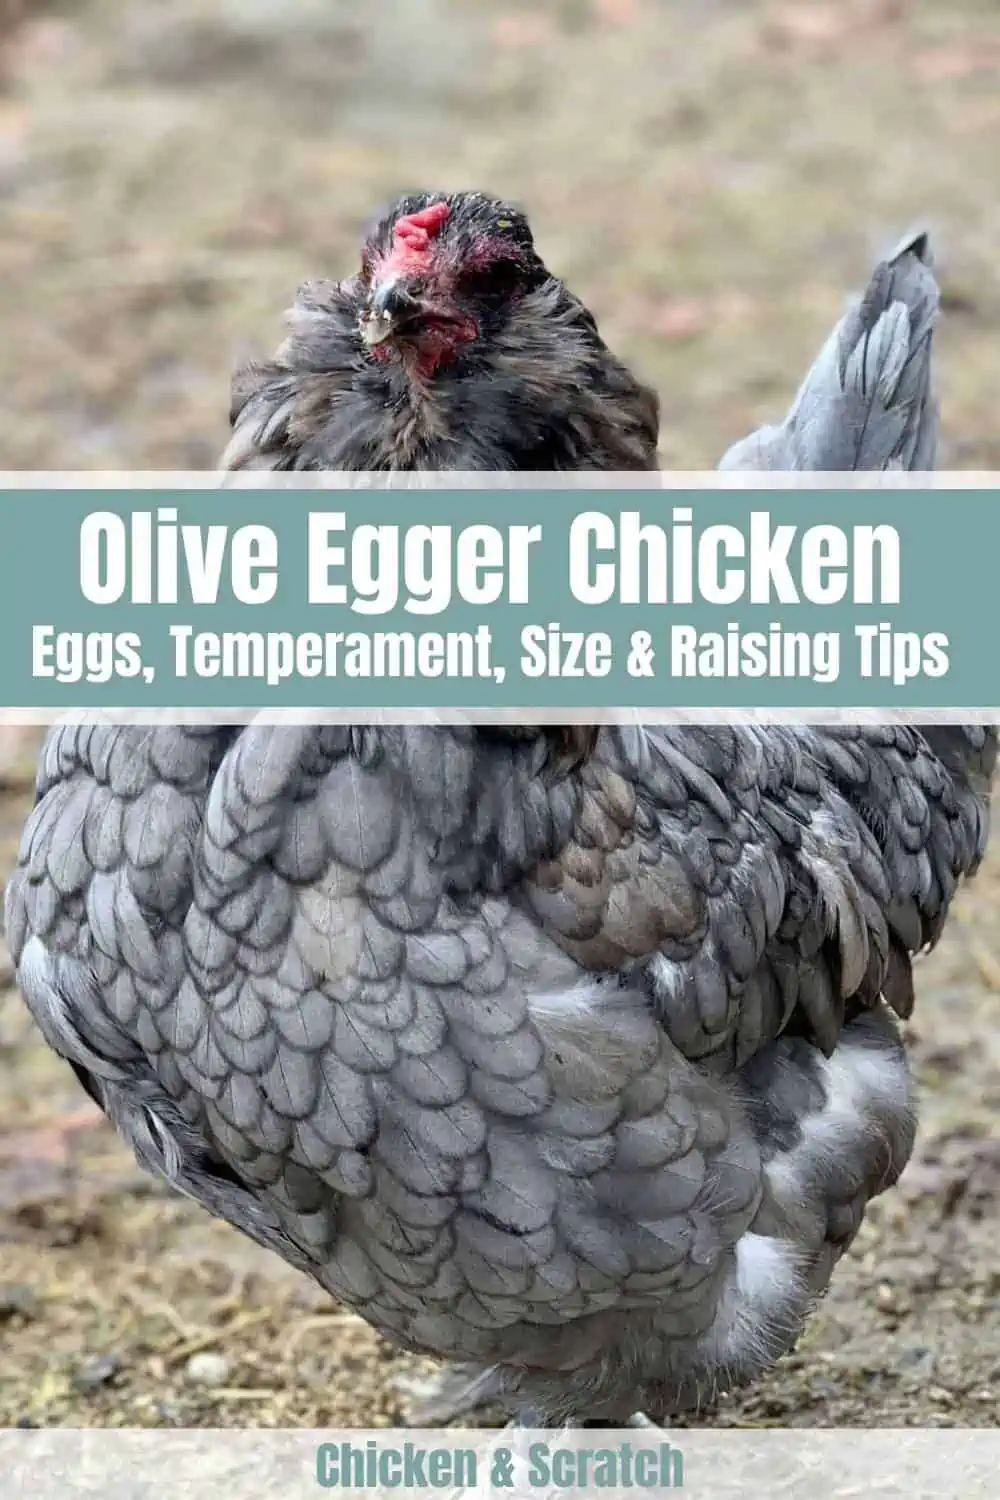 Olive Egger: Ovos, temperamento, tamanho e dicas de criação